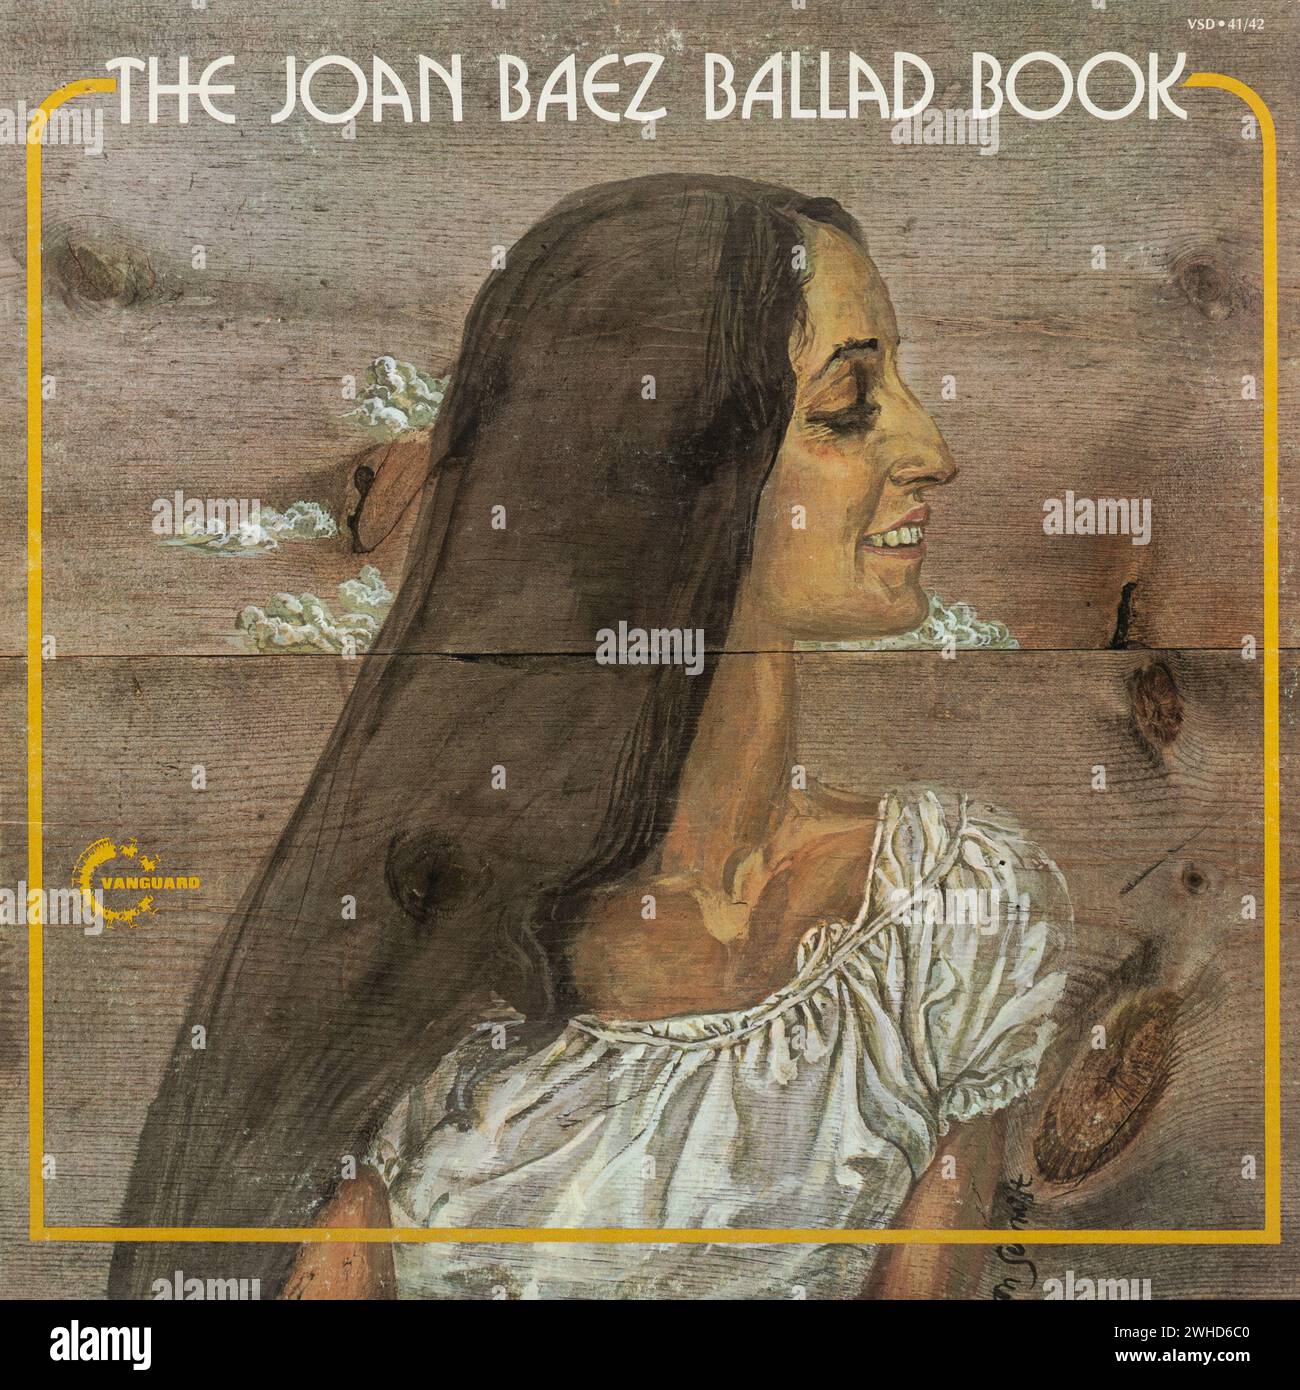 The Joan Baez Ballad Book Vinyl Album, ein Album aus dem Jahr 1972 mit traditioneller Folk Musik des amerikanischen Sängers Songwriter Stockfoto